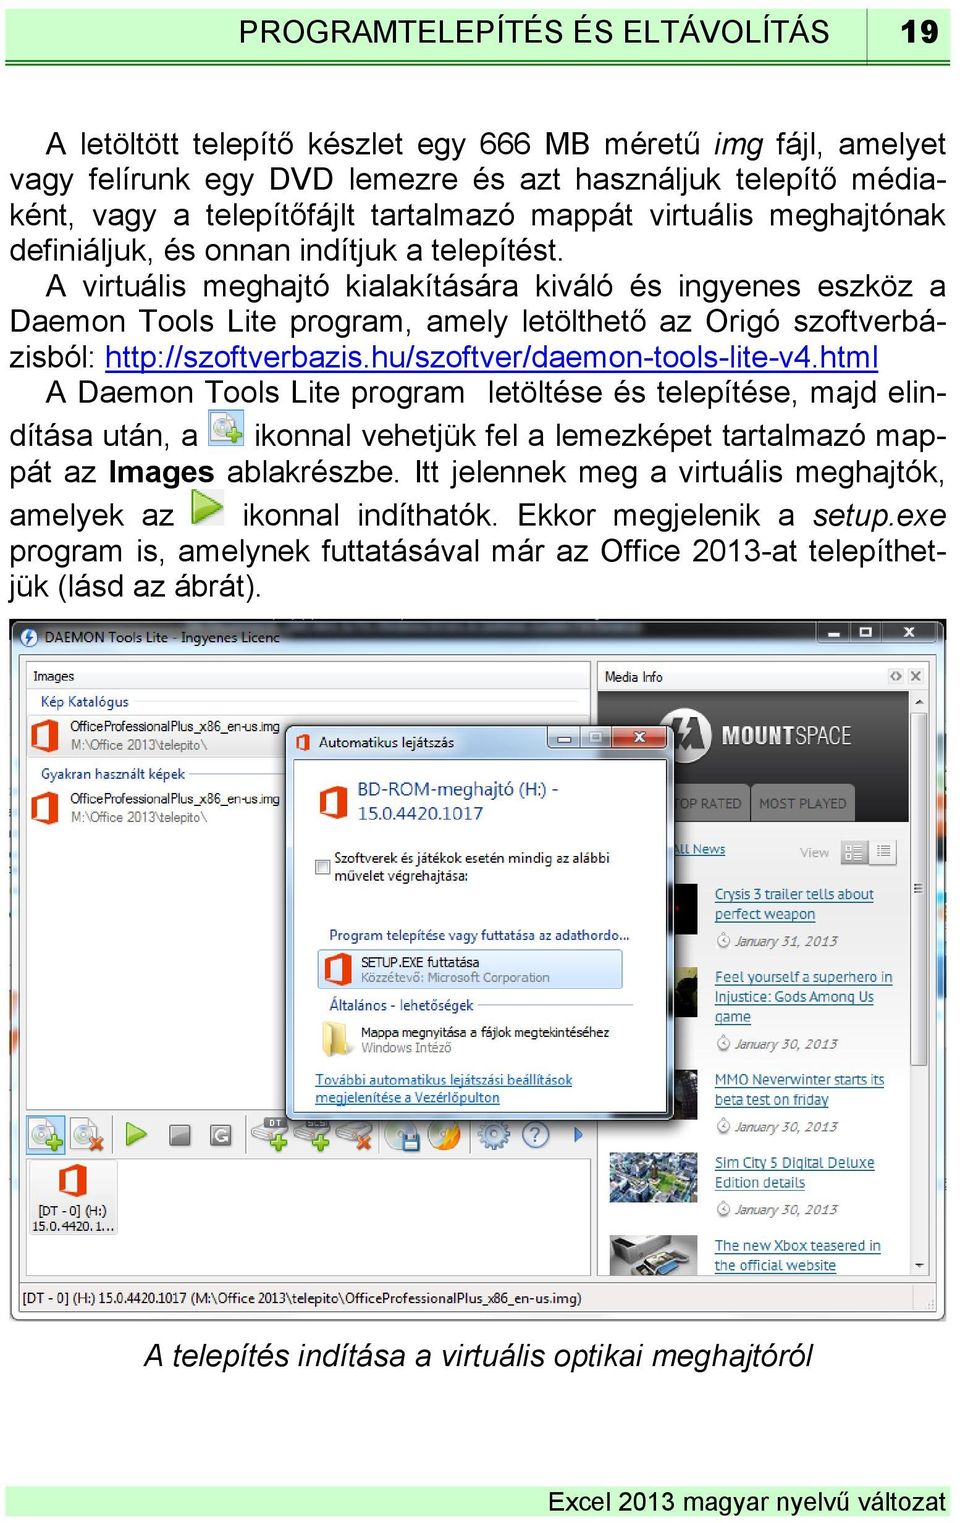 A virtuális meghajtó kialakítására kiváló és ingyenes eszköz a Daemon Tools Lite program, amely letölthető az Origó szoftverbázisból: http://szoftverbazis.hu/szoftver/daemon-tools-lite-v4.